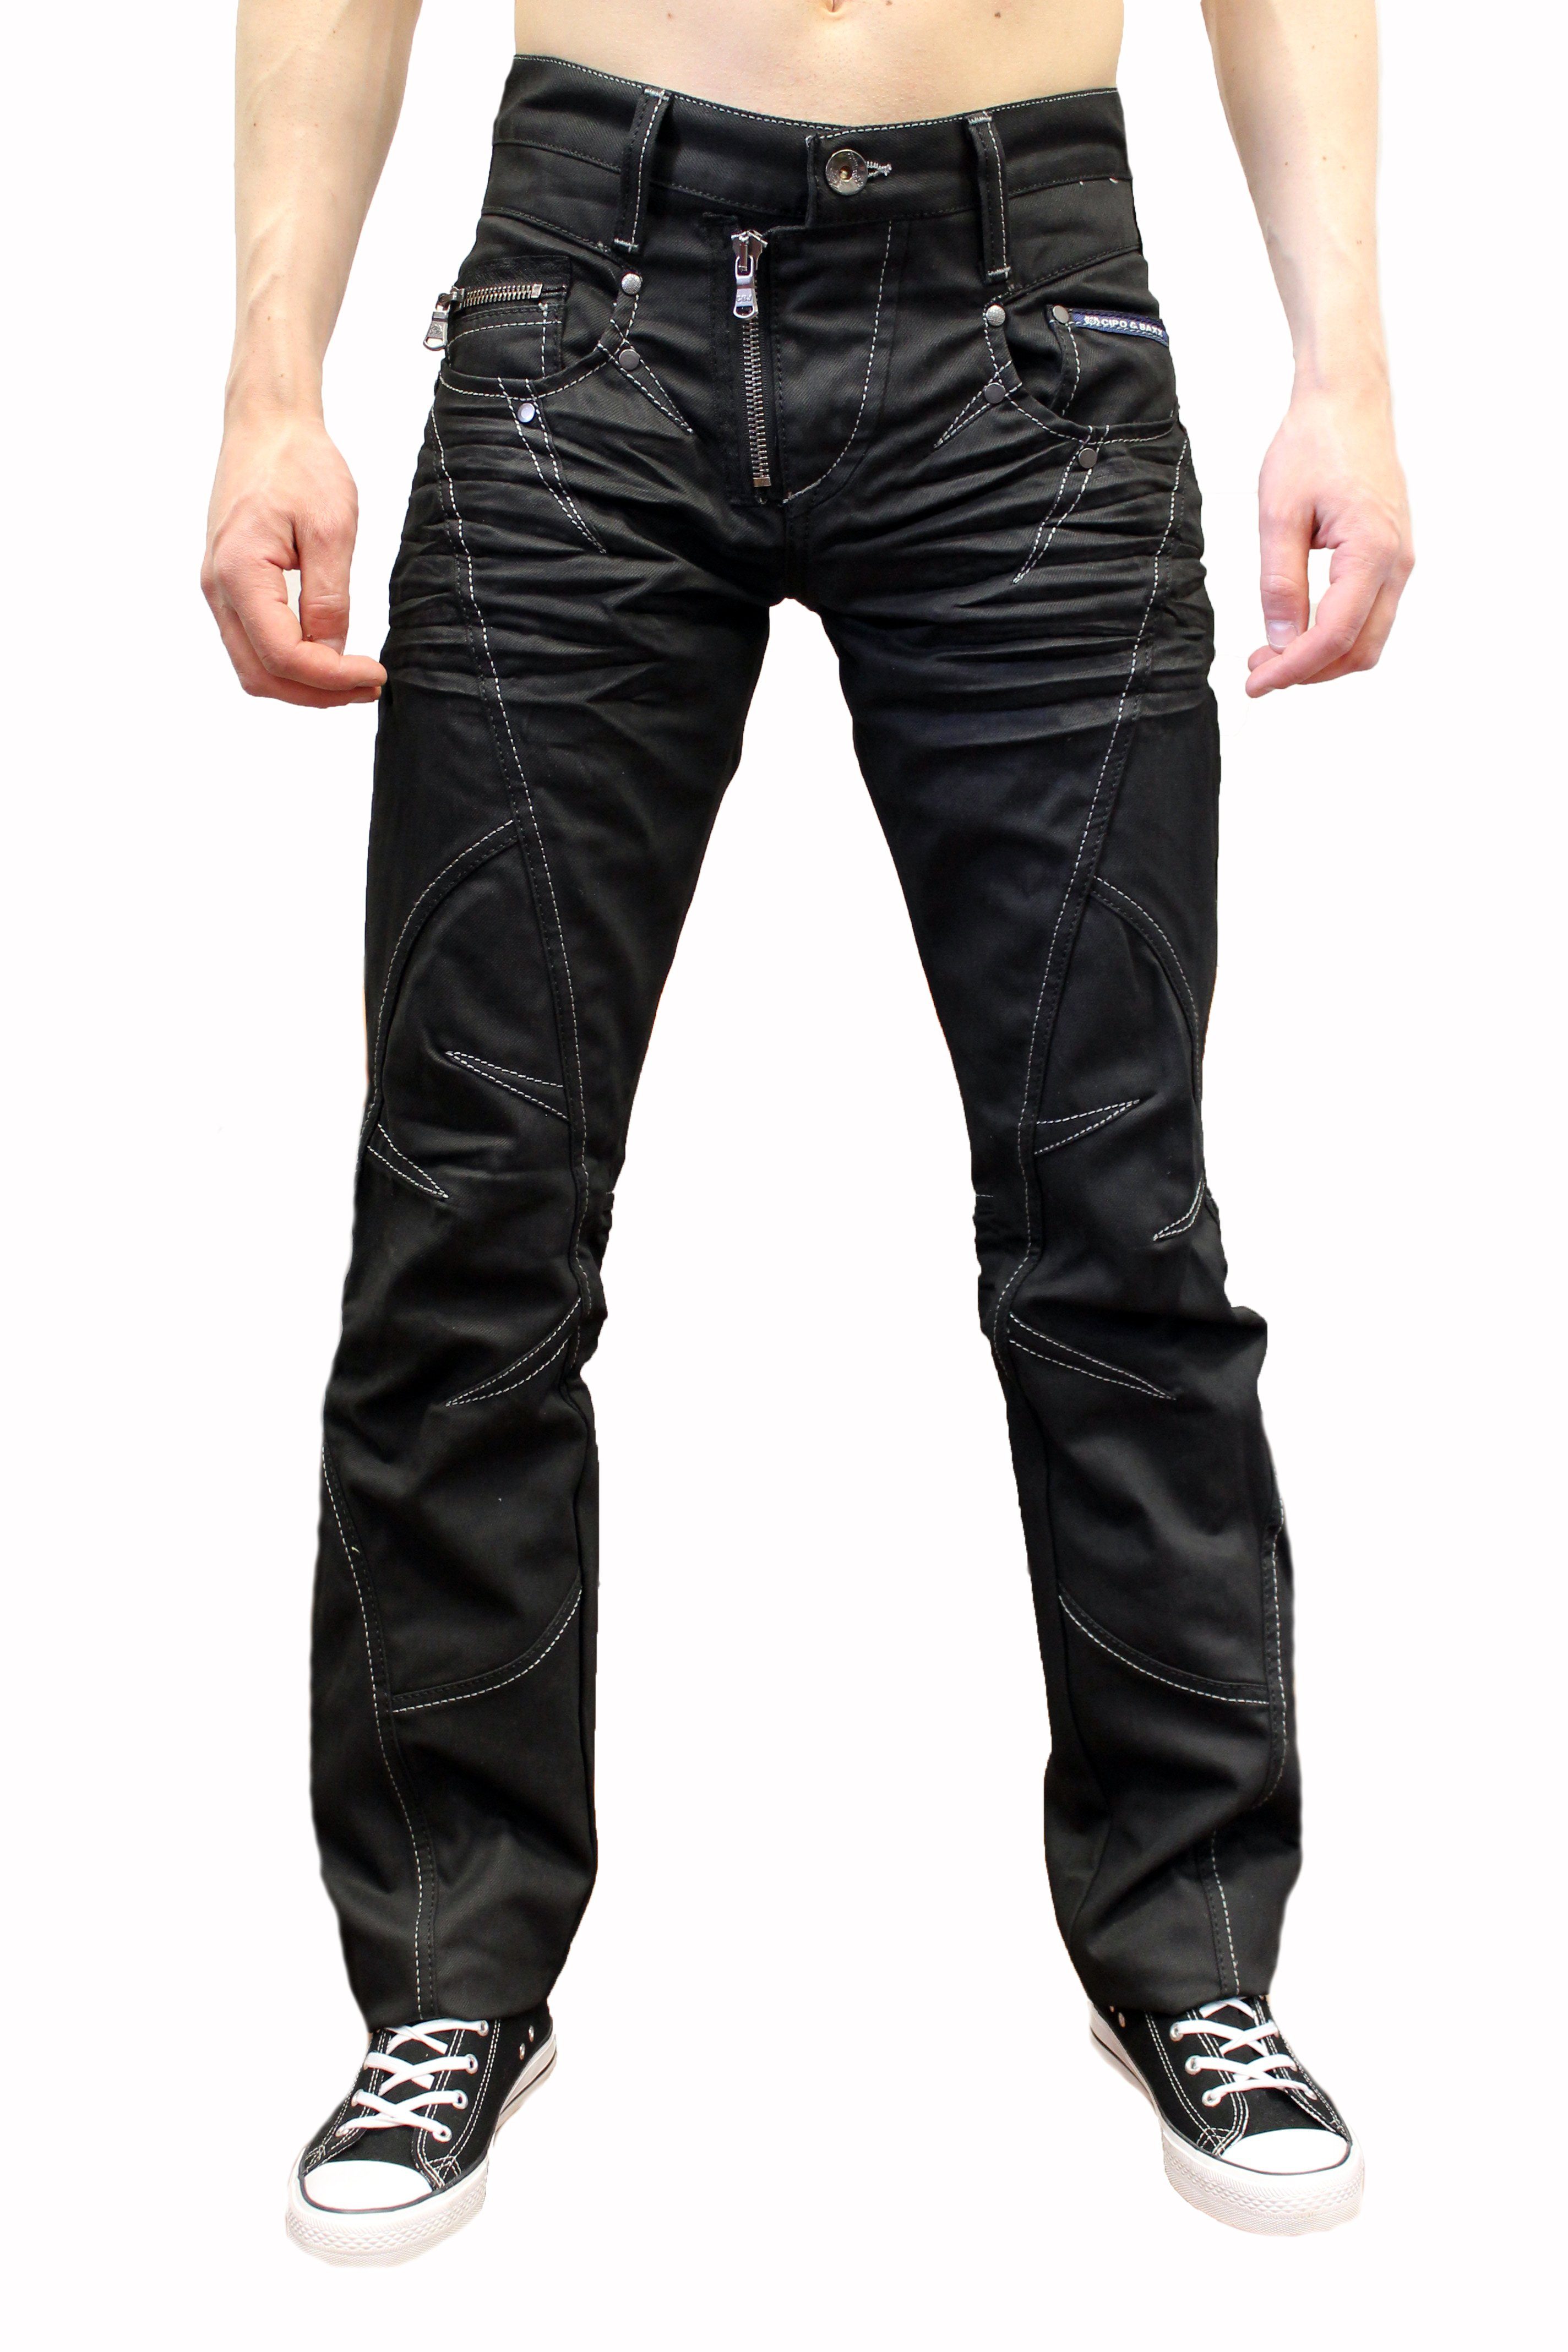 Cipo & Baxx Regular-fit-Jeans Herren Jeans Hose mit ausgefallenem Design  und gewachster Waschung Weiße Kontrastnähte und stylische Zipper